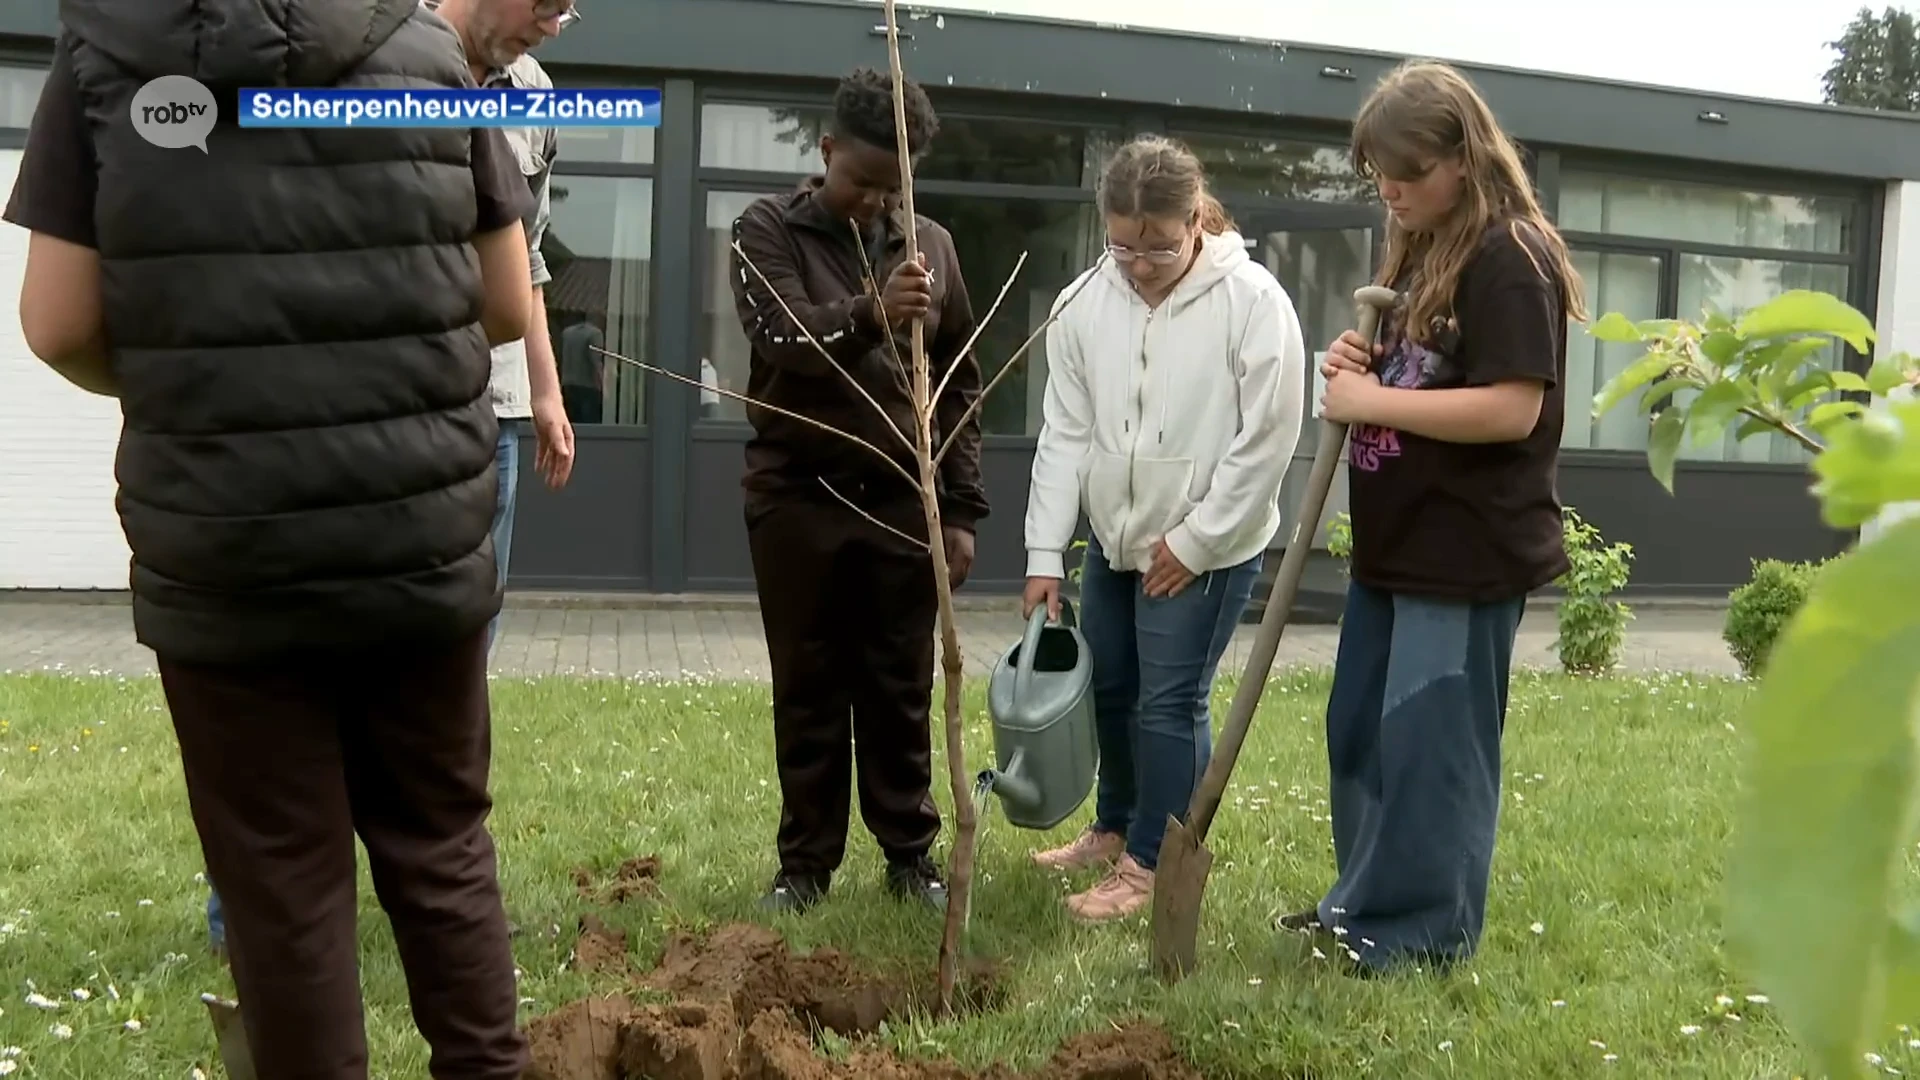 Leerlingen buitengewoon onderwijs Scherpenheuvel planten 17 kersenbomen op speelplaats